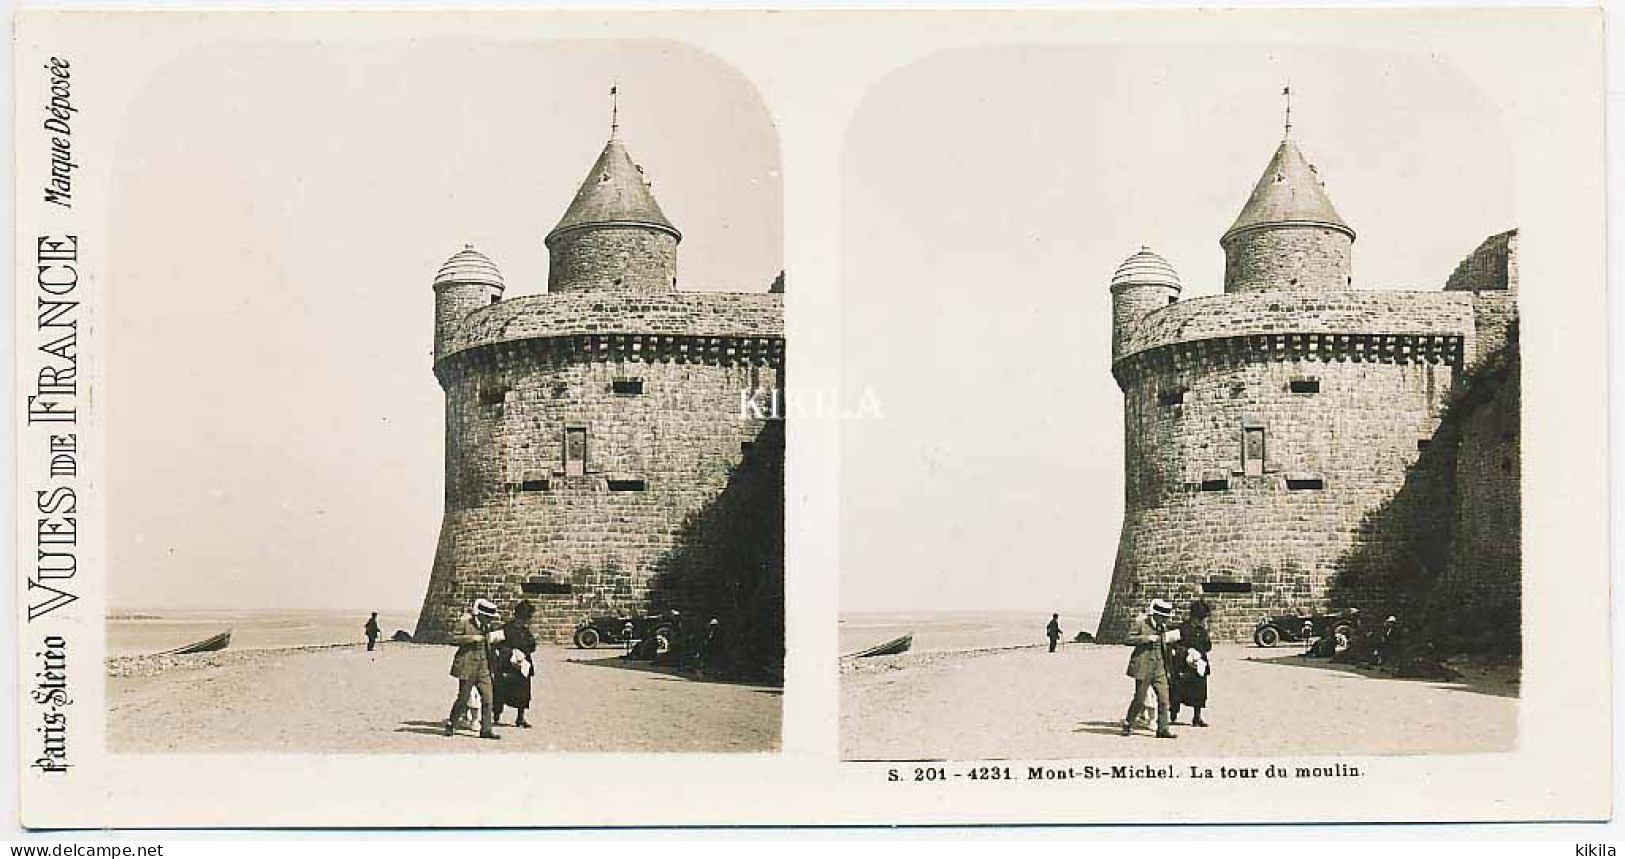 Photo Stéréoscopique 7,3x7,4cm Carte 17x8,7 Cm S.201 - 4231 MONT-SAINT-MICHEL La Tour Du Moulin  Automobile Animée - Stereoscopic